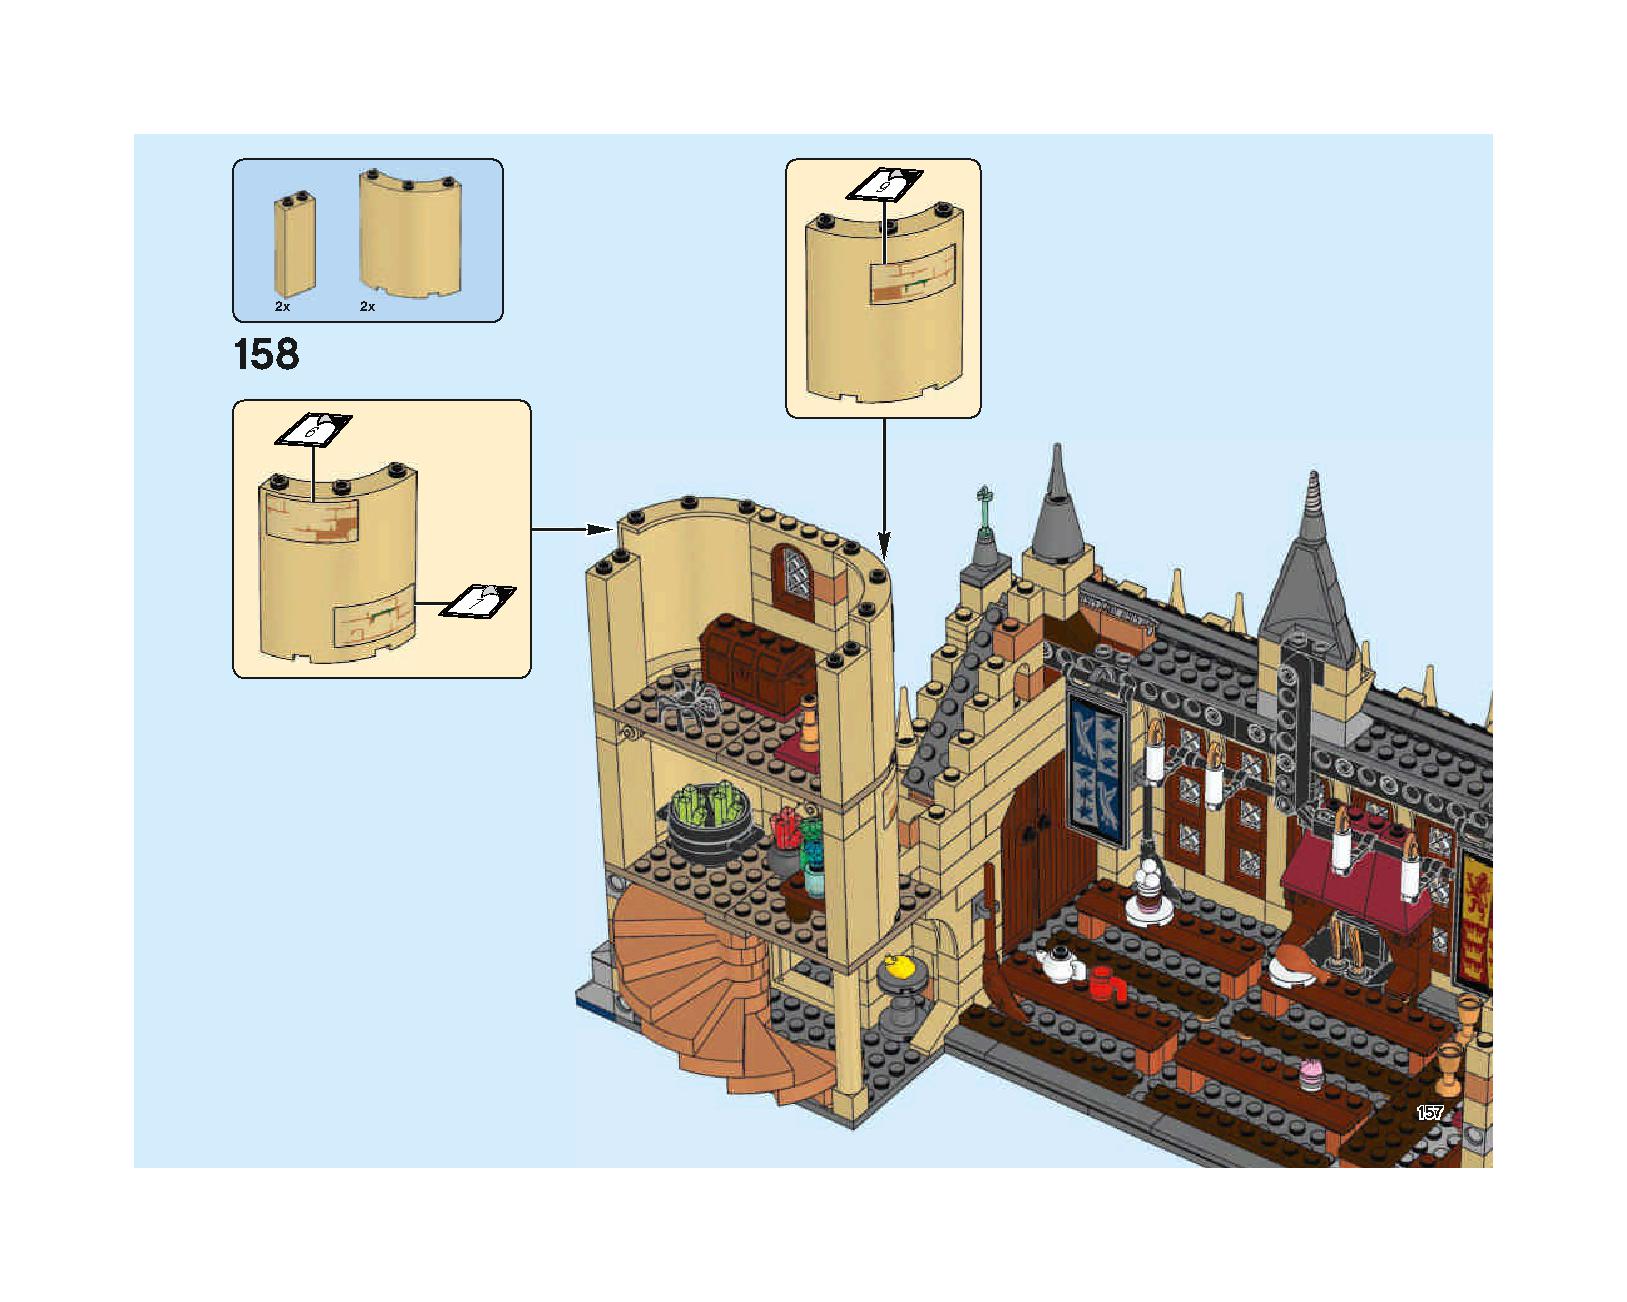 ホグワーツの大広間 75954 レゴの商品情報 レゴの説明書・組立方法 157 page